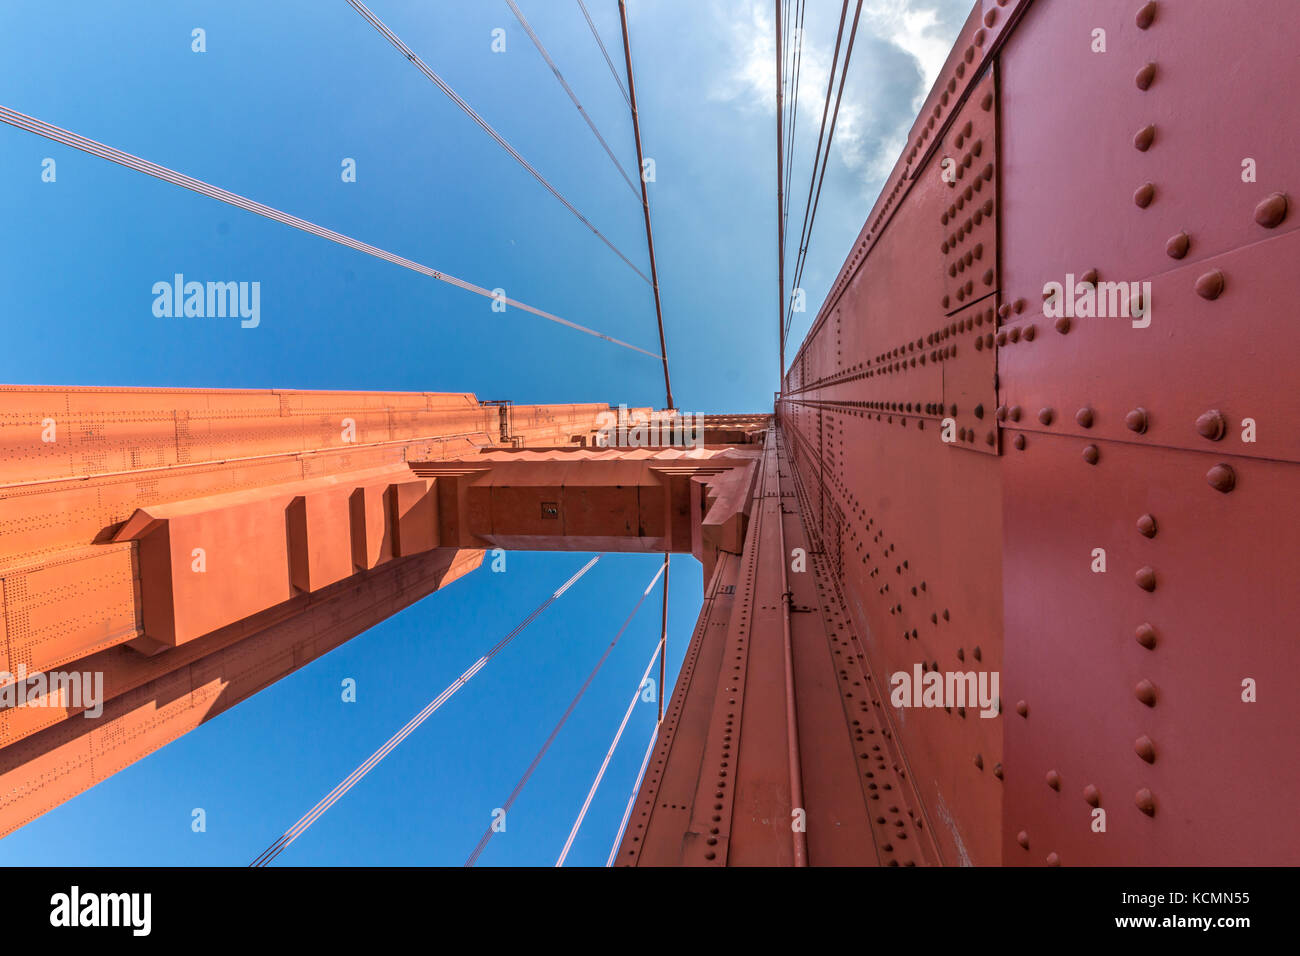 Vista desde debajo de la estructura del puente Golden Gate. Foto de stock